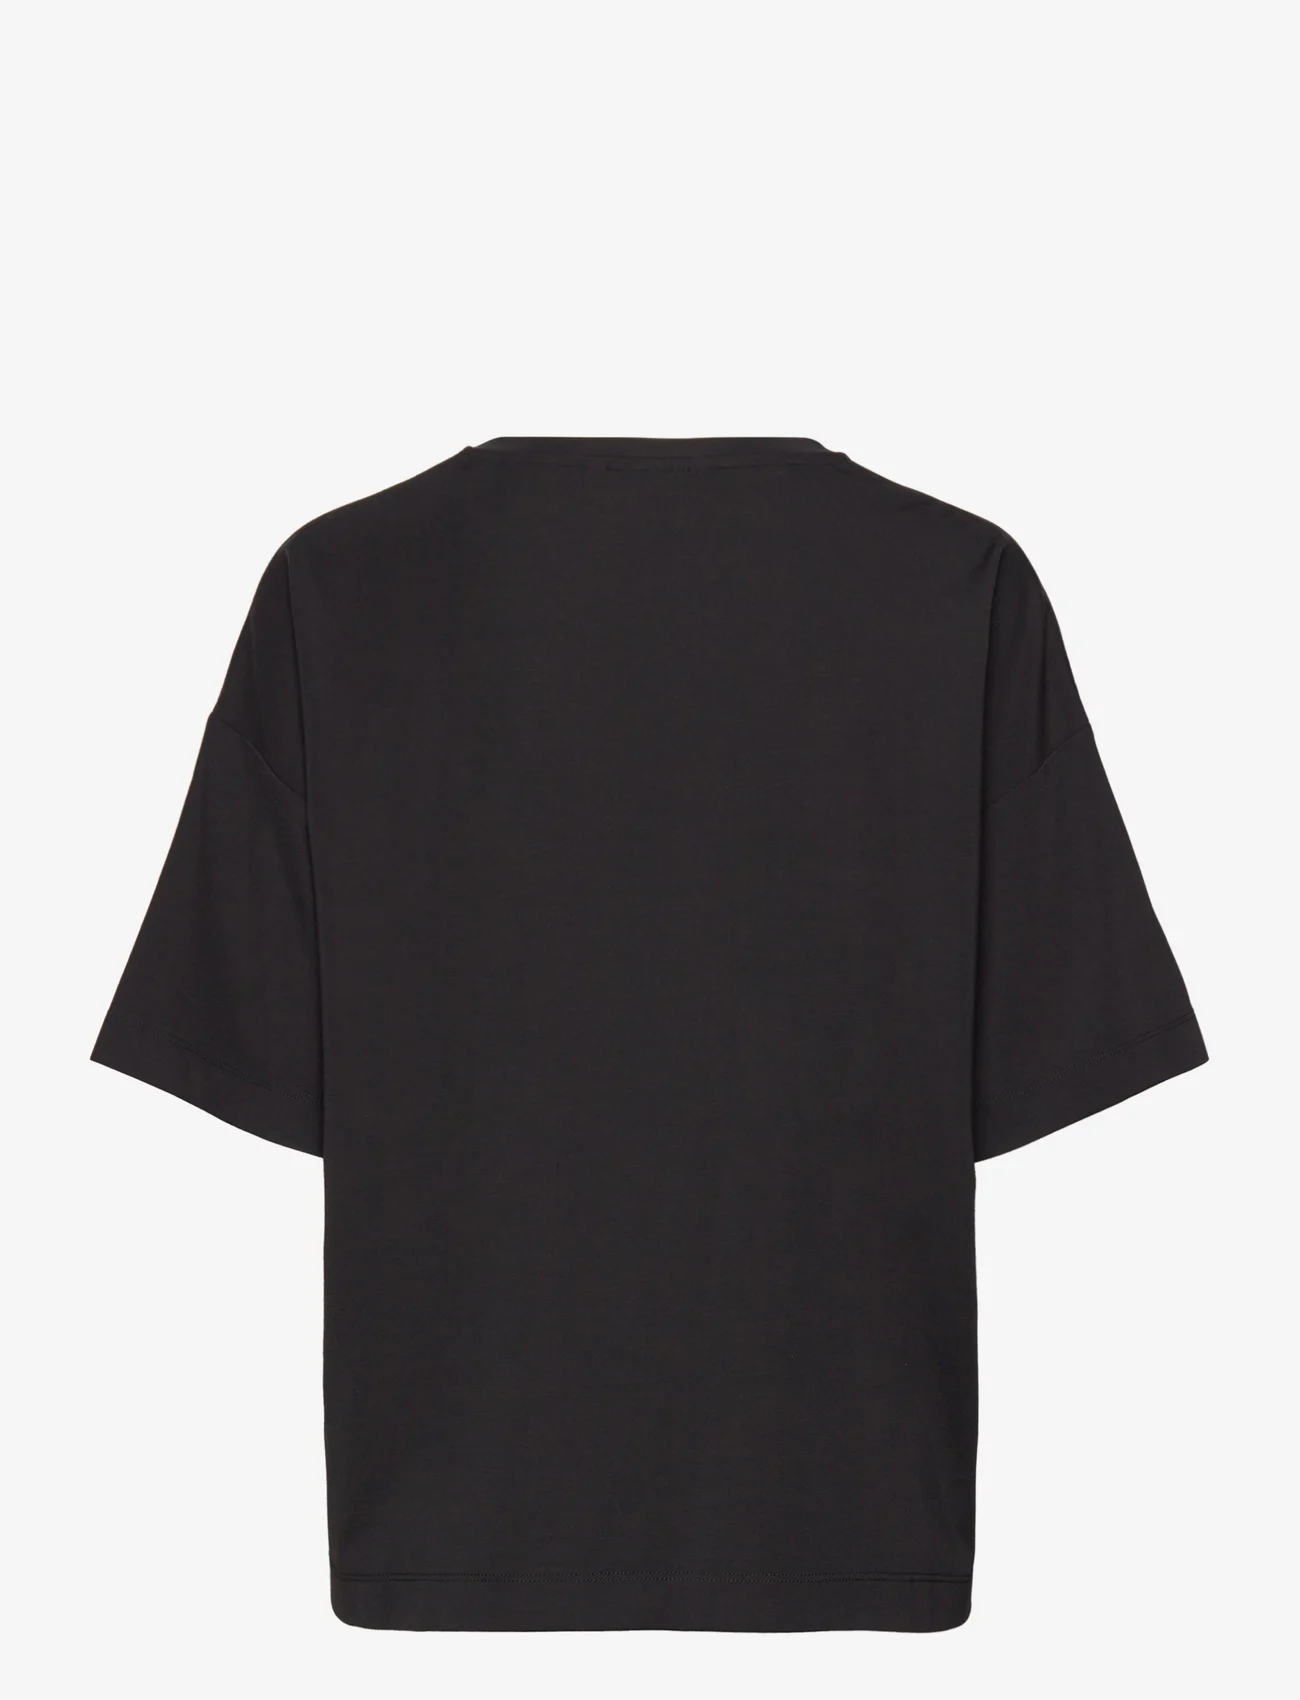 InWear - KasiaIW Tshirt - t-shirts - black - 1